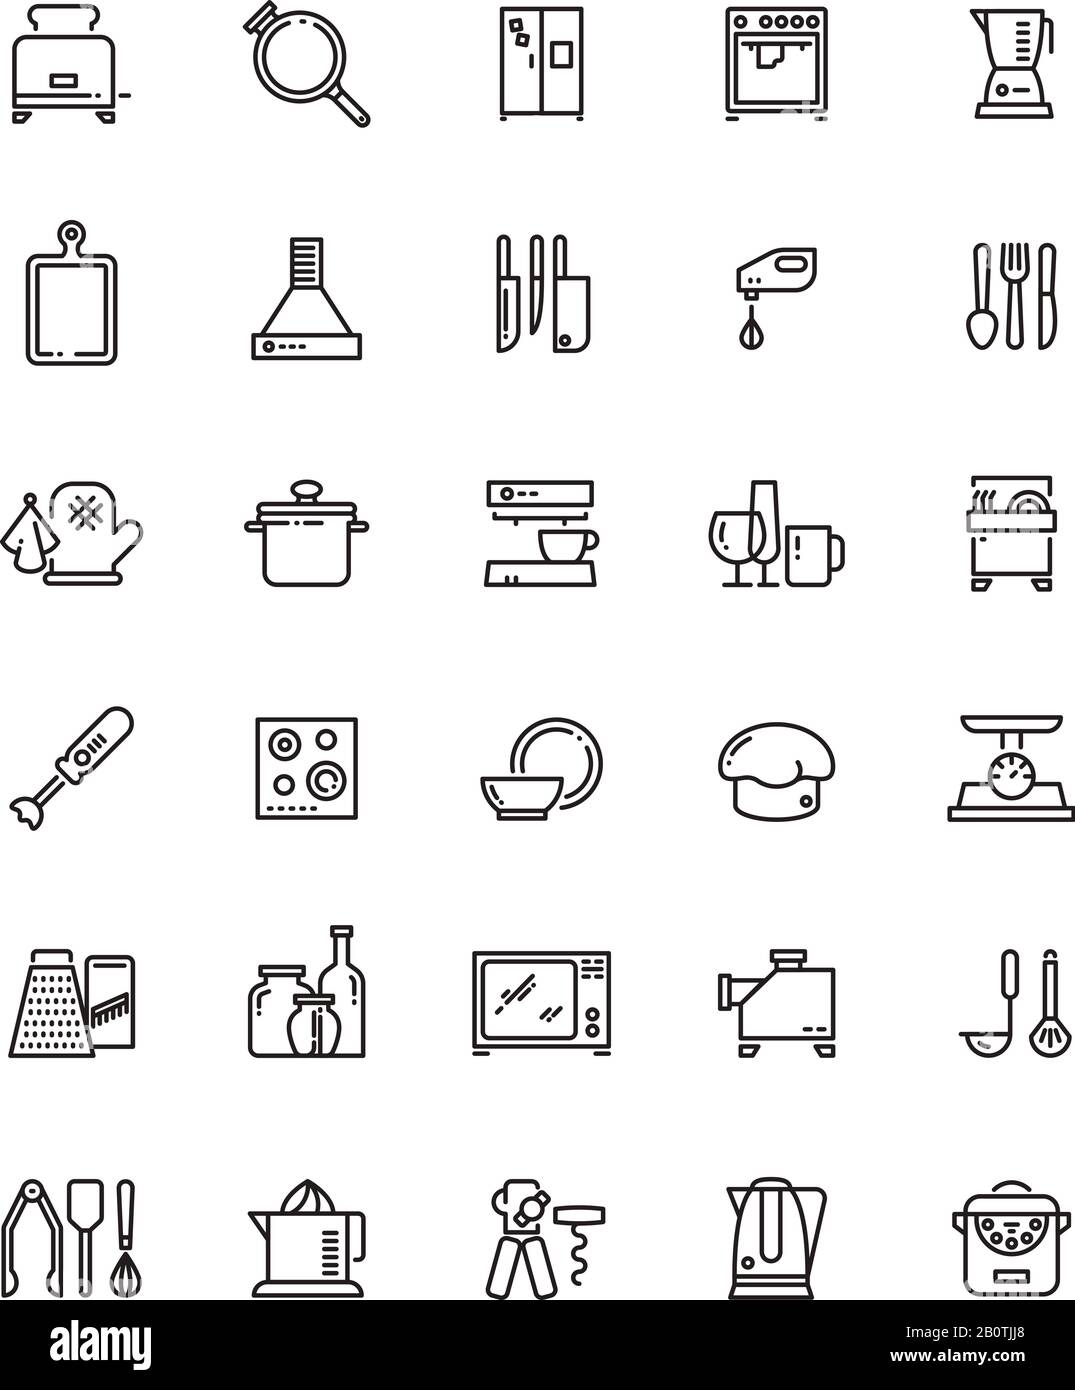 Küche, Küchengeräte und Geräte sind ein Symbol für Vektorgrafiken. Piktogramme für die Küche im Restaurant. Küchenwerkzeuge und Utensilililililililililil Stock Vektor